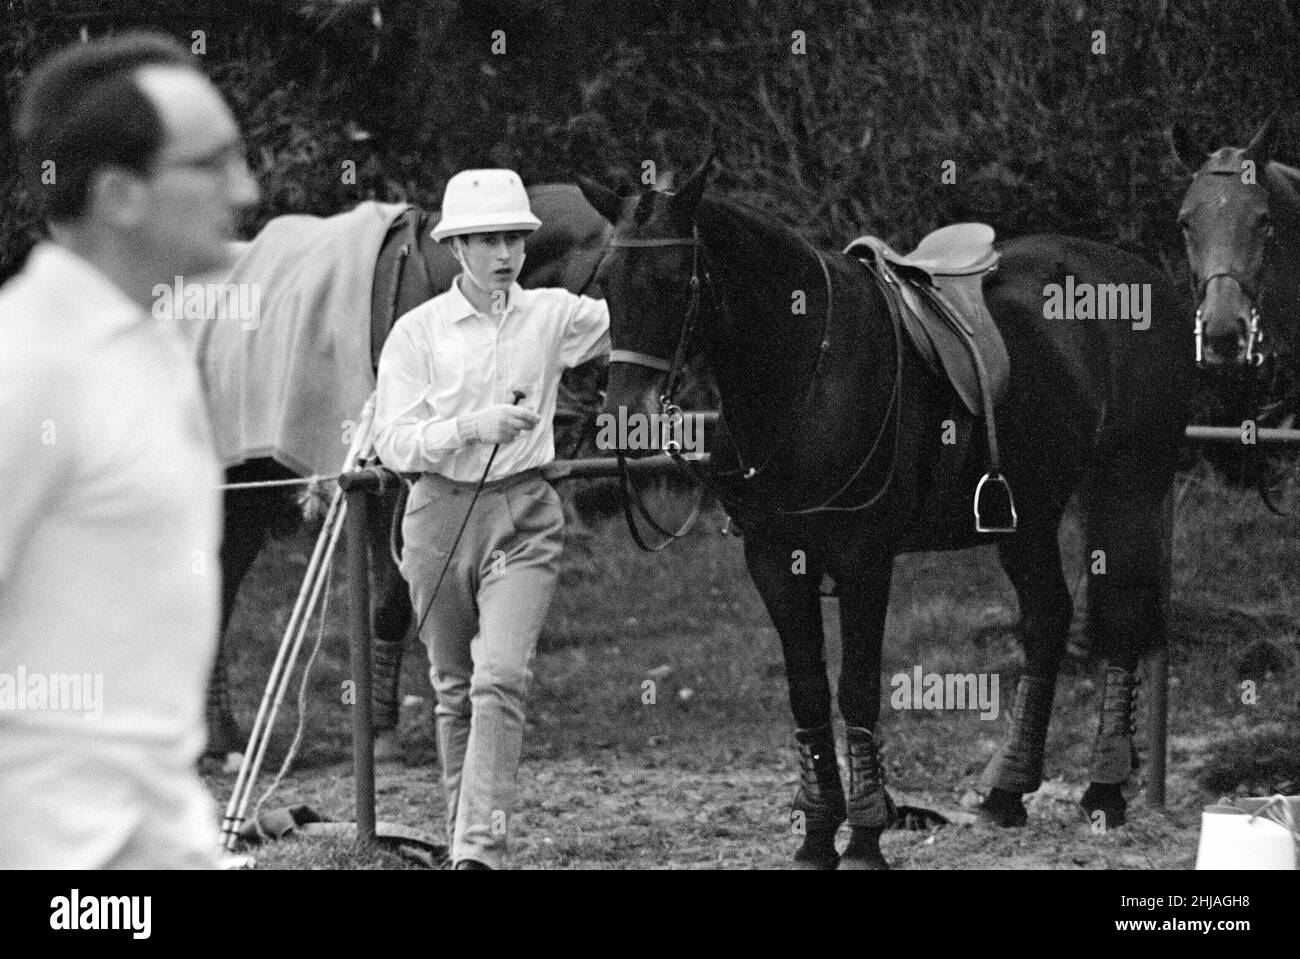 Der junge Prinz Charles am Smith's Lawn im Windsor Park spielte vor Beginn der Polosaison erstmals mit seinem Vater Prinz Philip, Herzog von Edinburgh, in einem Trainingsspiel. Es gab Lobgesang, als der 15-jährige Charles sein allererstes Tor erzielte. Bild zeigt: Prinz Charles mit seinem Pony vor dem Start des Spiels. 13th. April 1964. Stockfoto